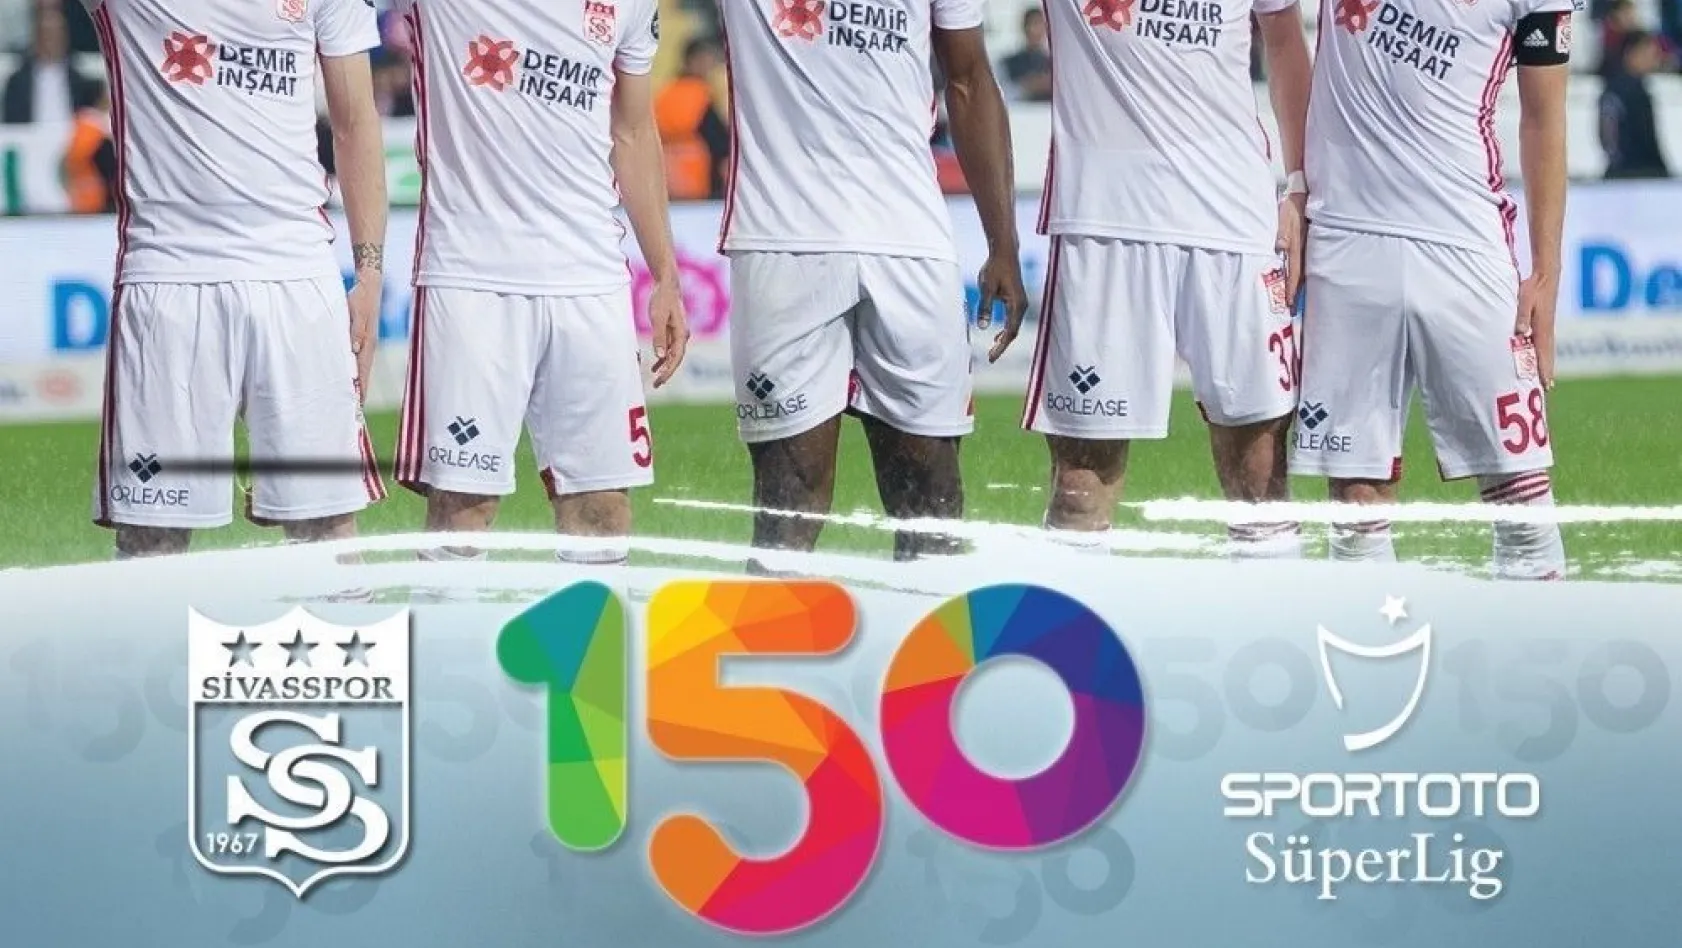 Sivasspor, Süper Lig'de 150. galibiyetini aldı
